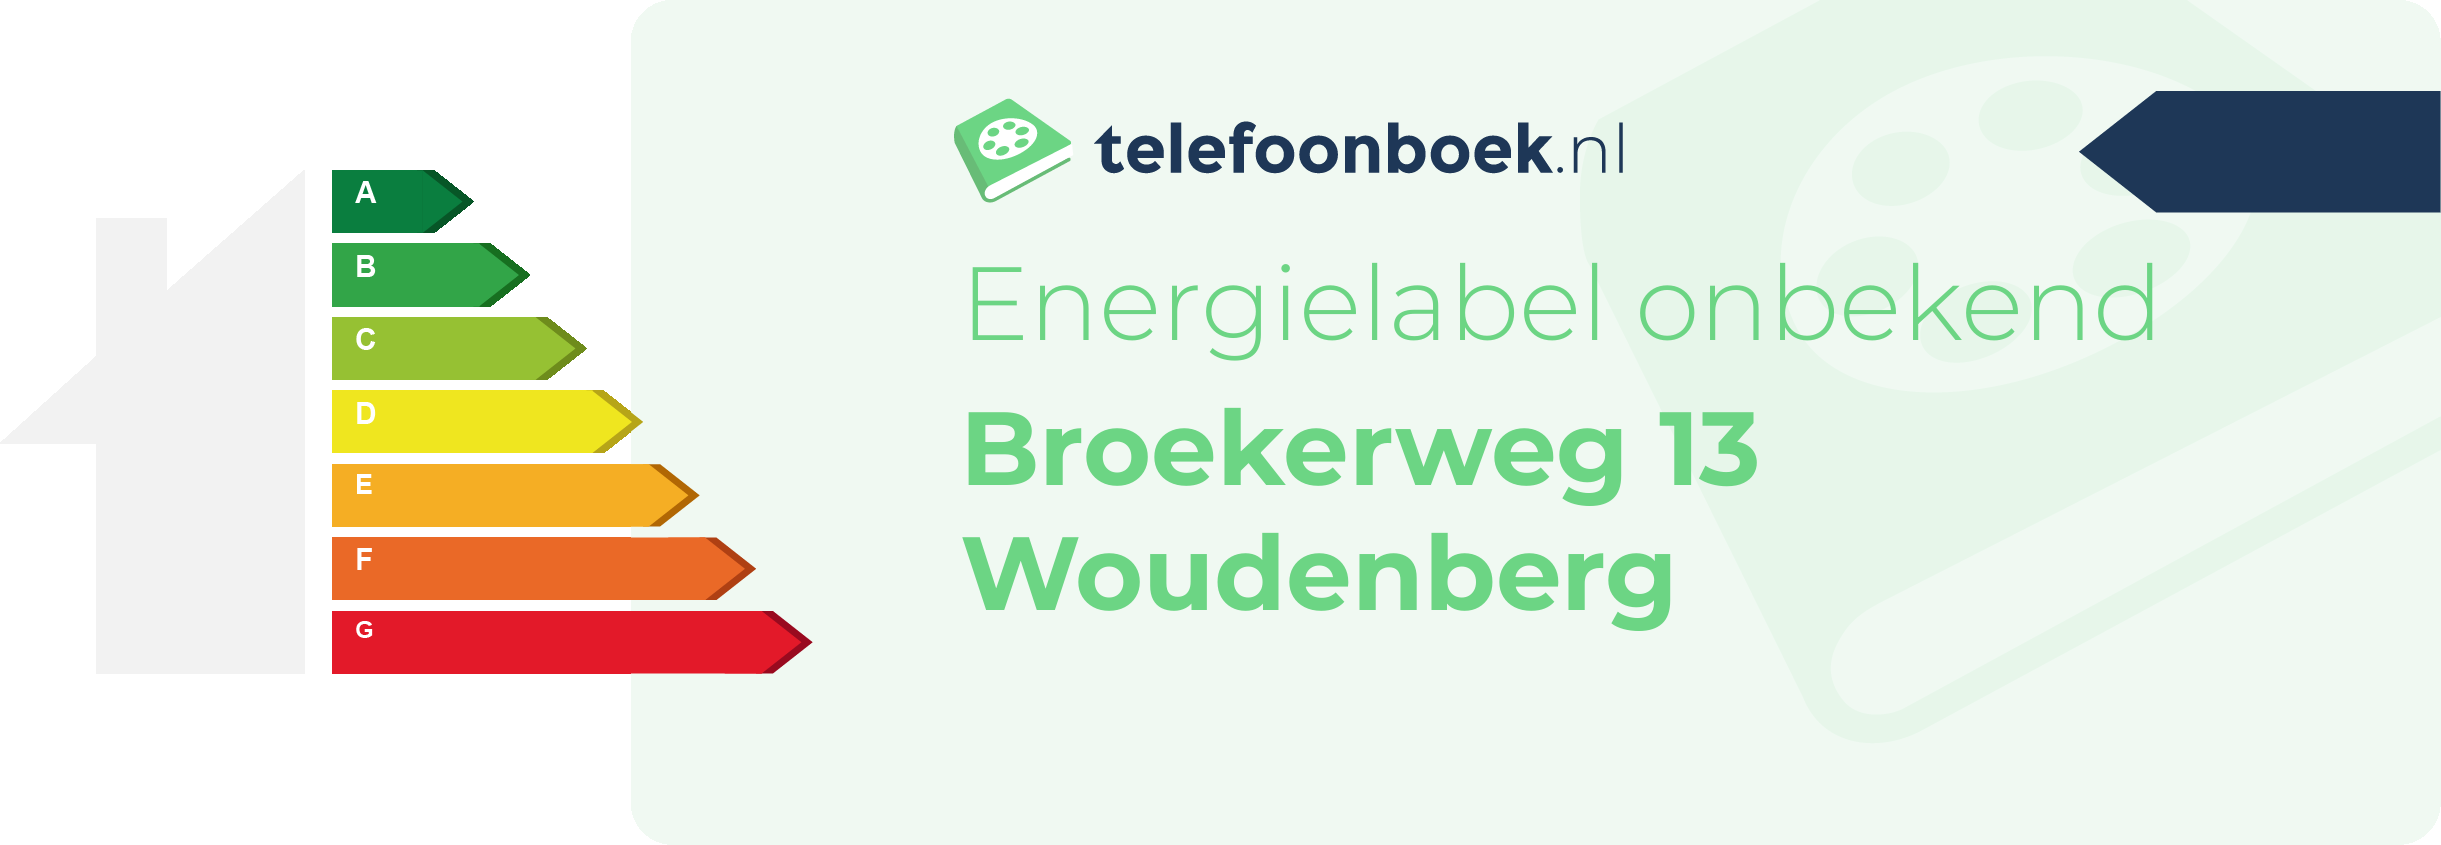 Energielabel Broekerweg 13 Woudenberg